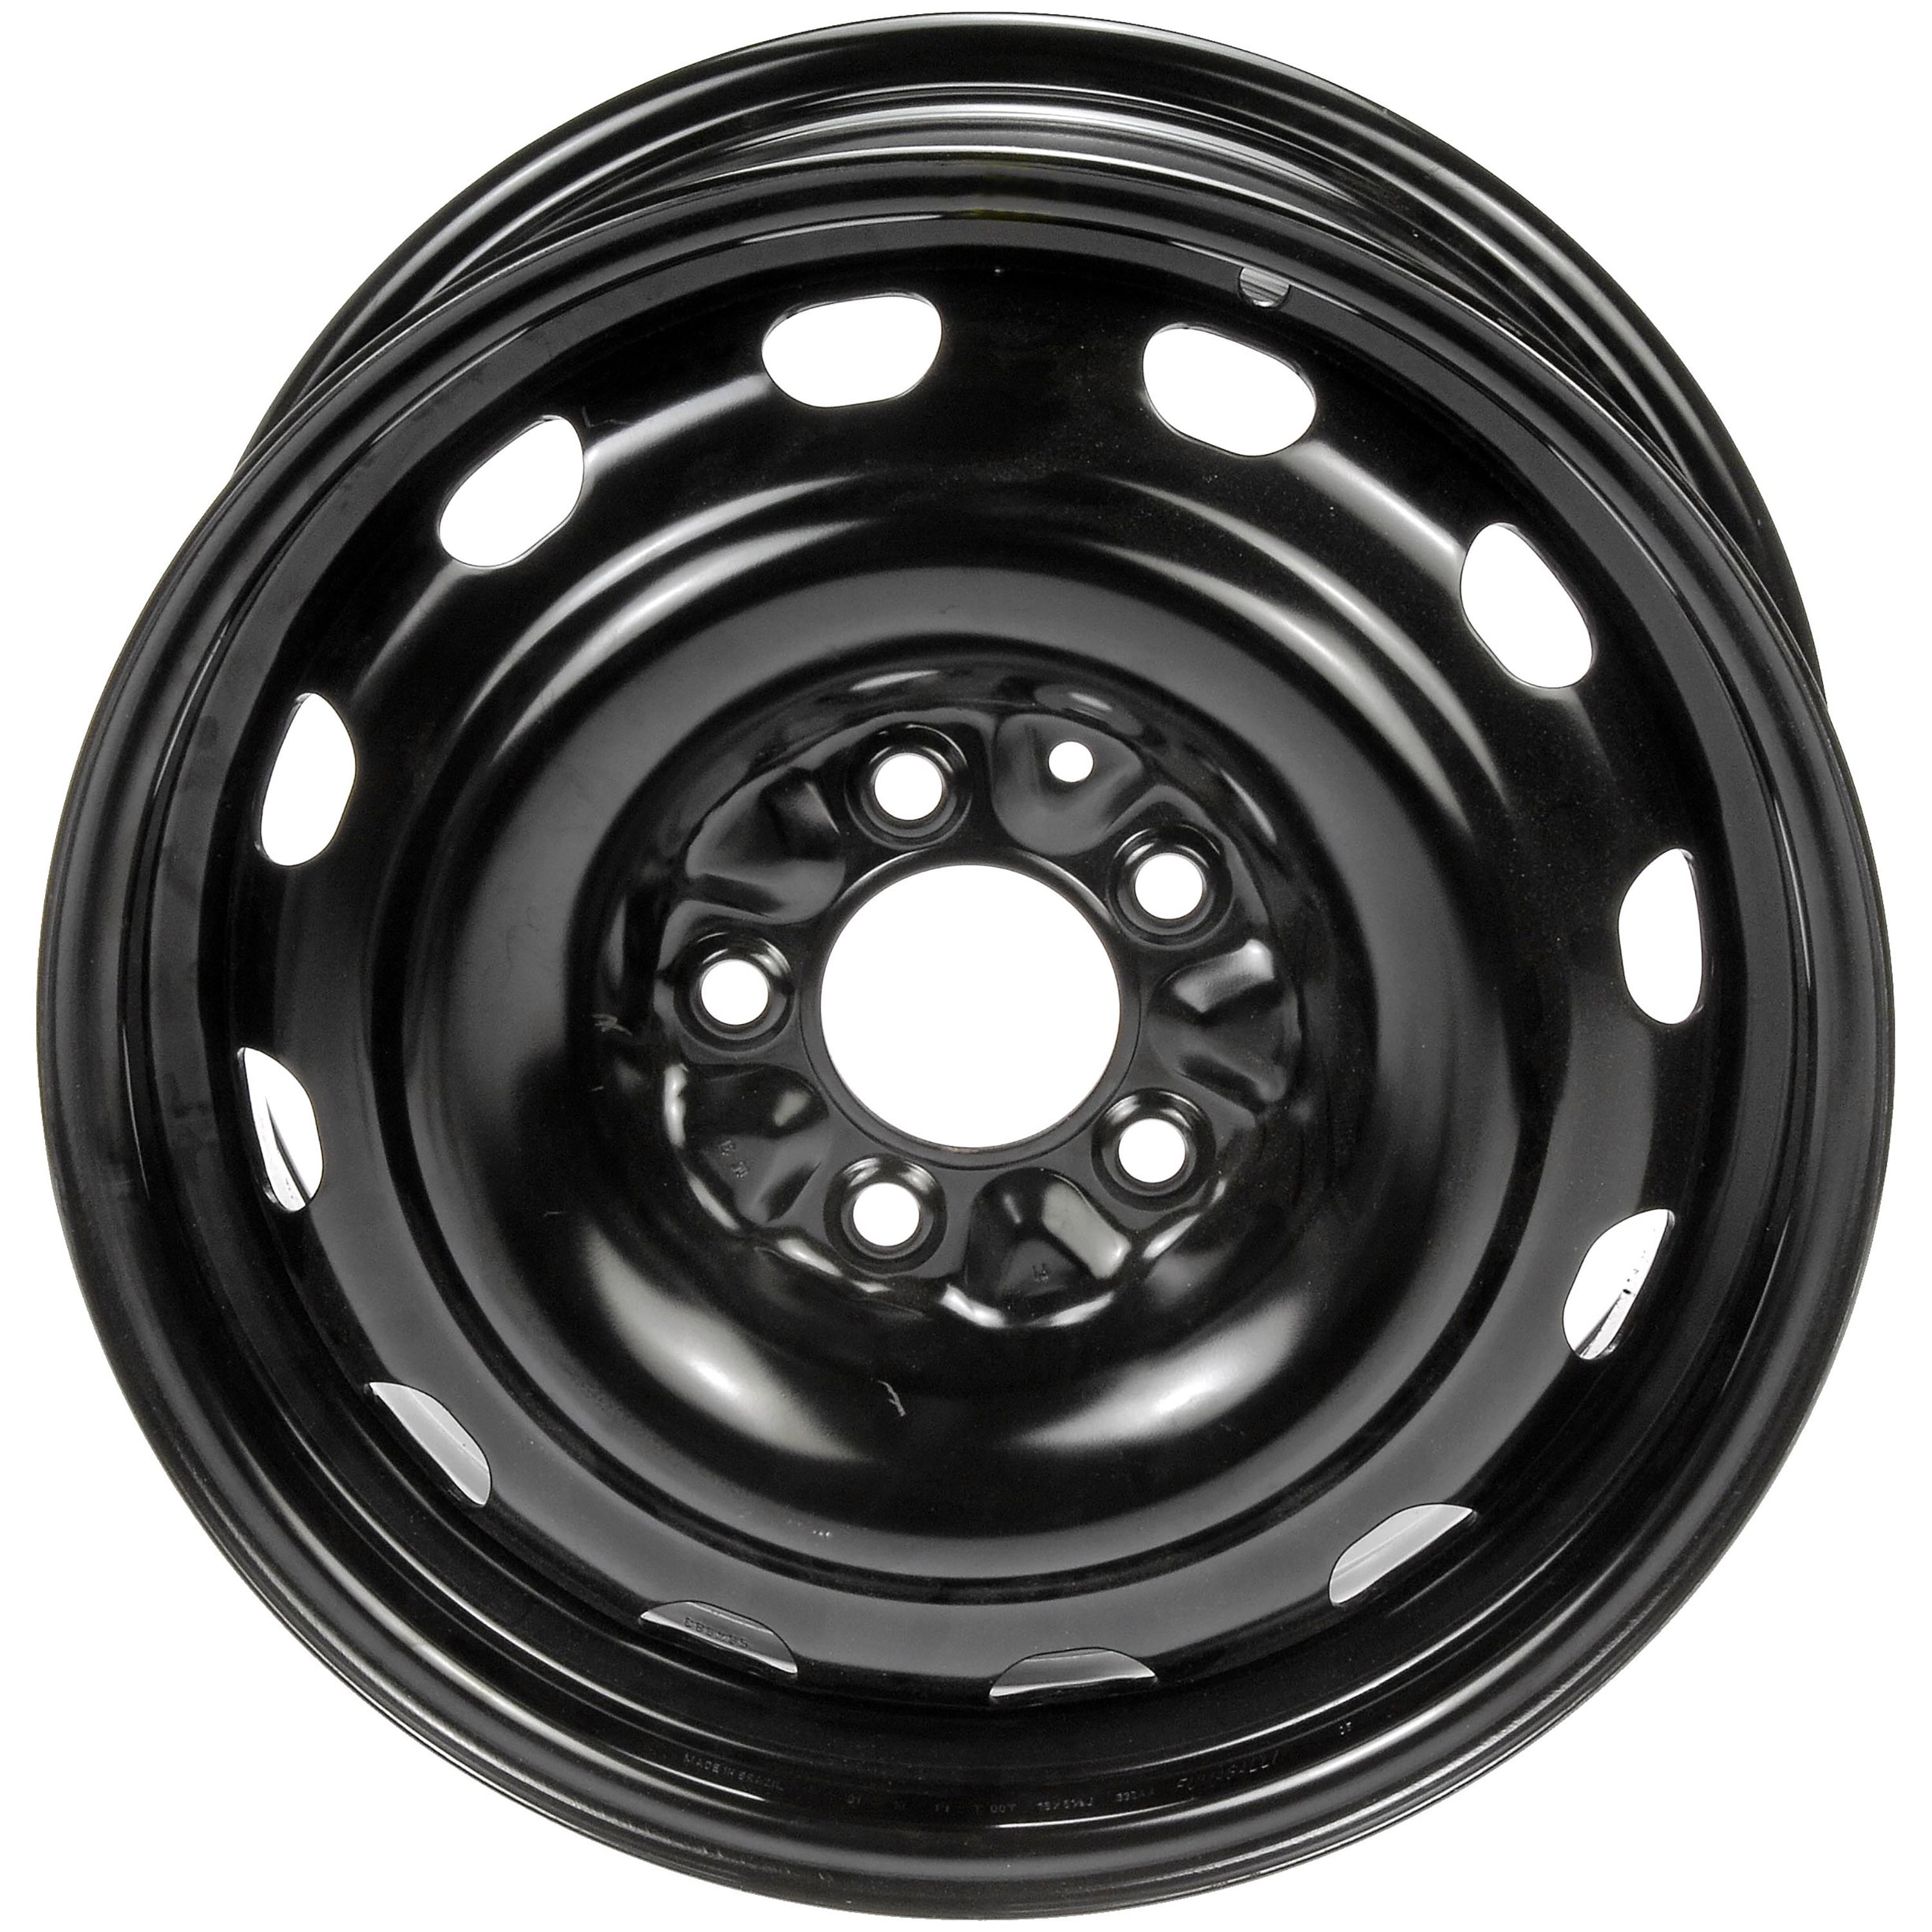 Dorman 939-107 Wheel for Specific Chrysler / Dodge Models, Black